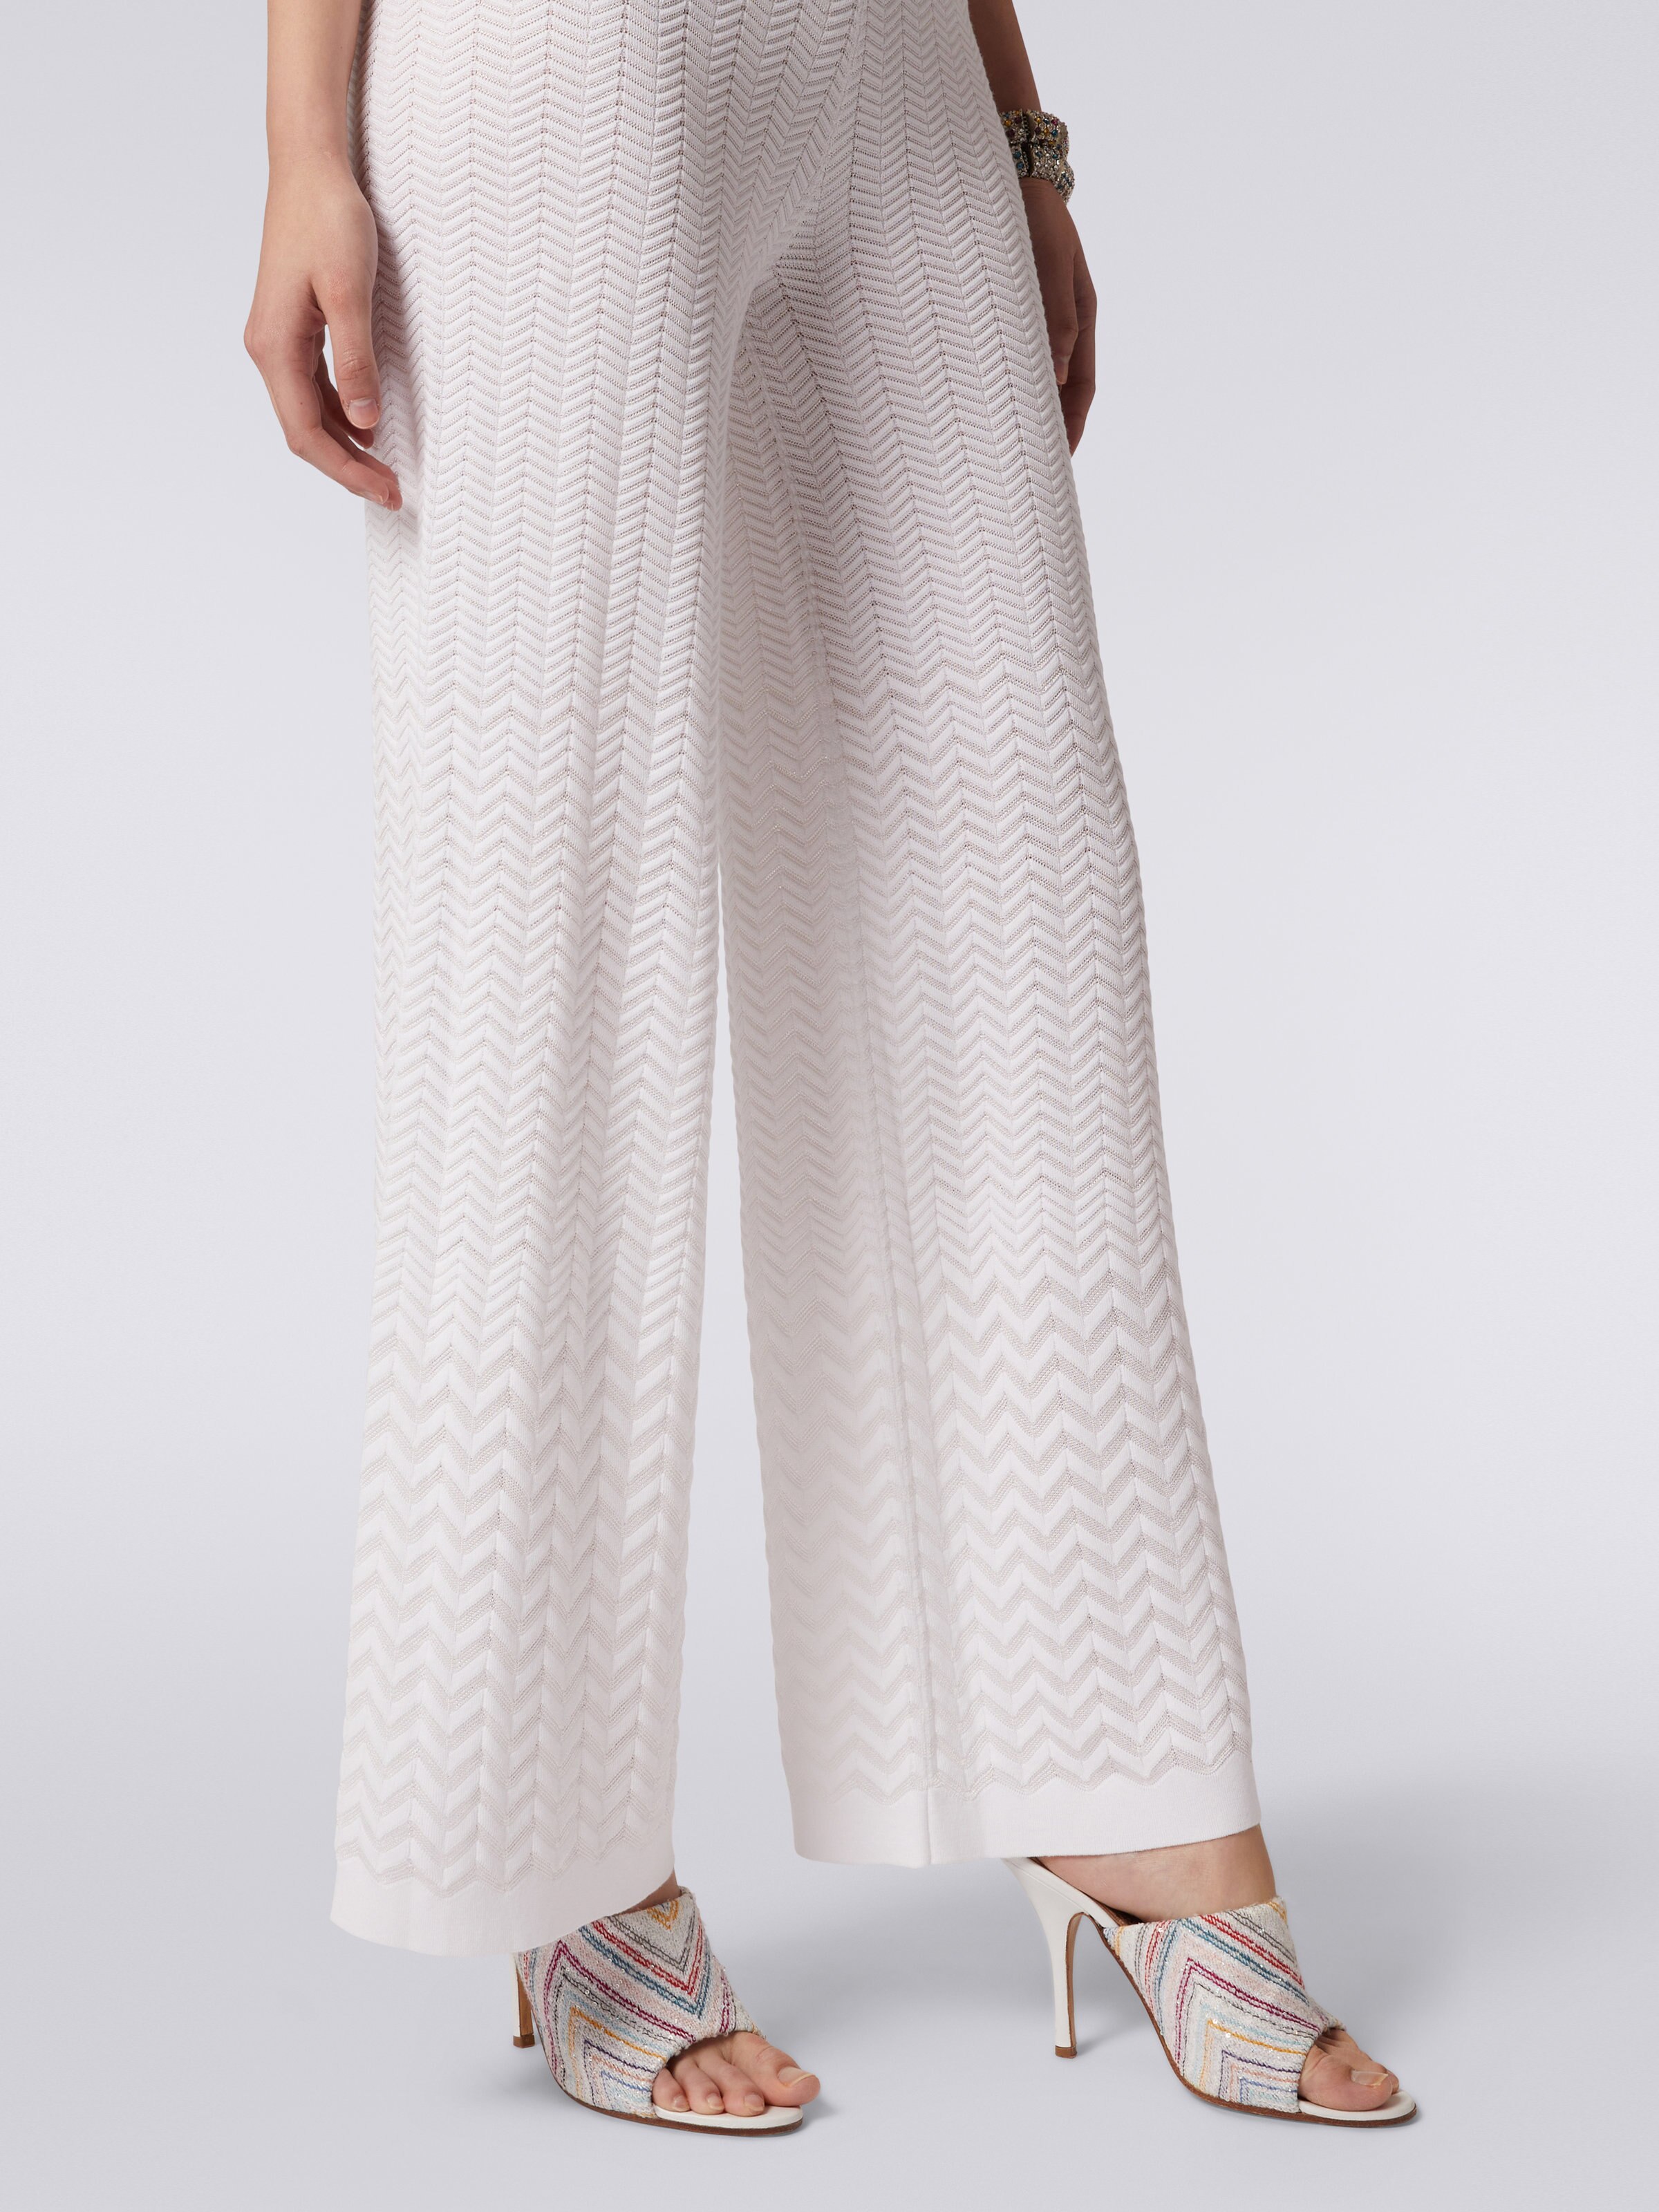 Pantaloni dritti in maglia con chevron tono su tono, Bianco  - 4